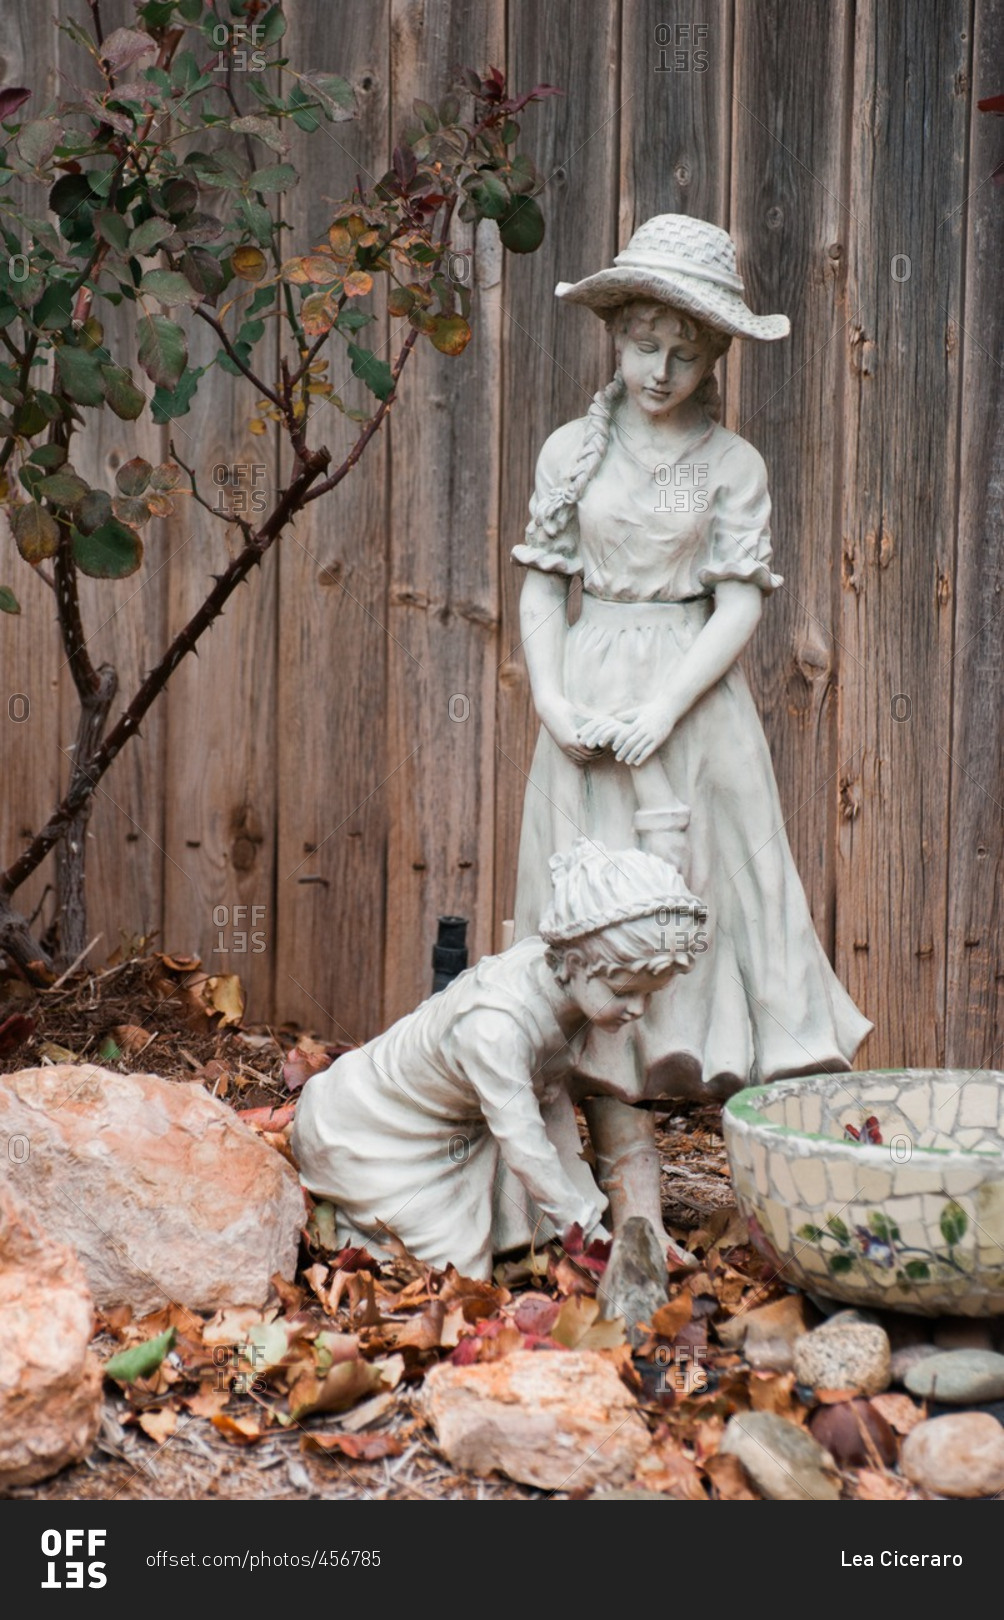 Backyard statue of little girls and a bird bath